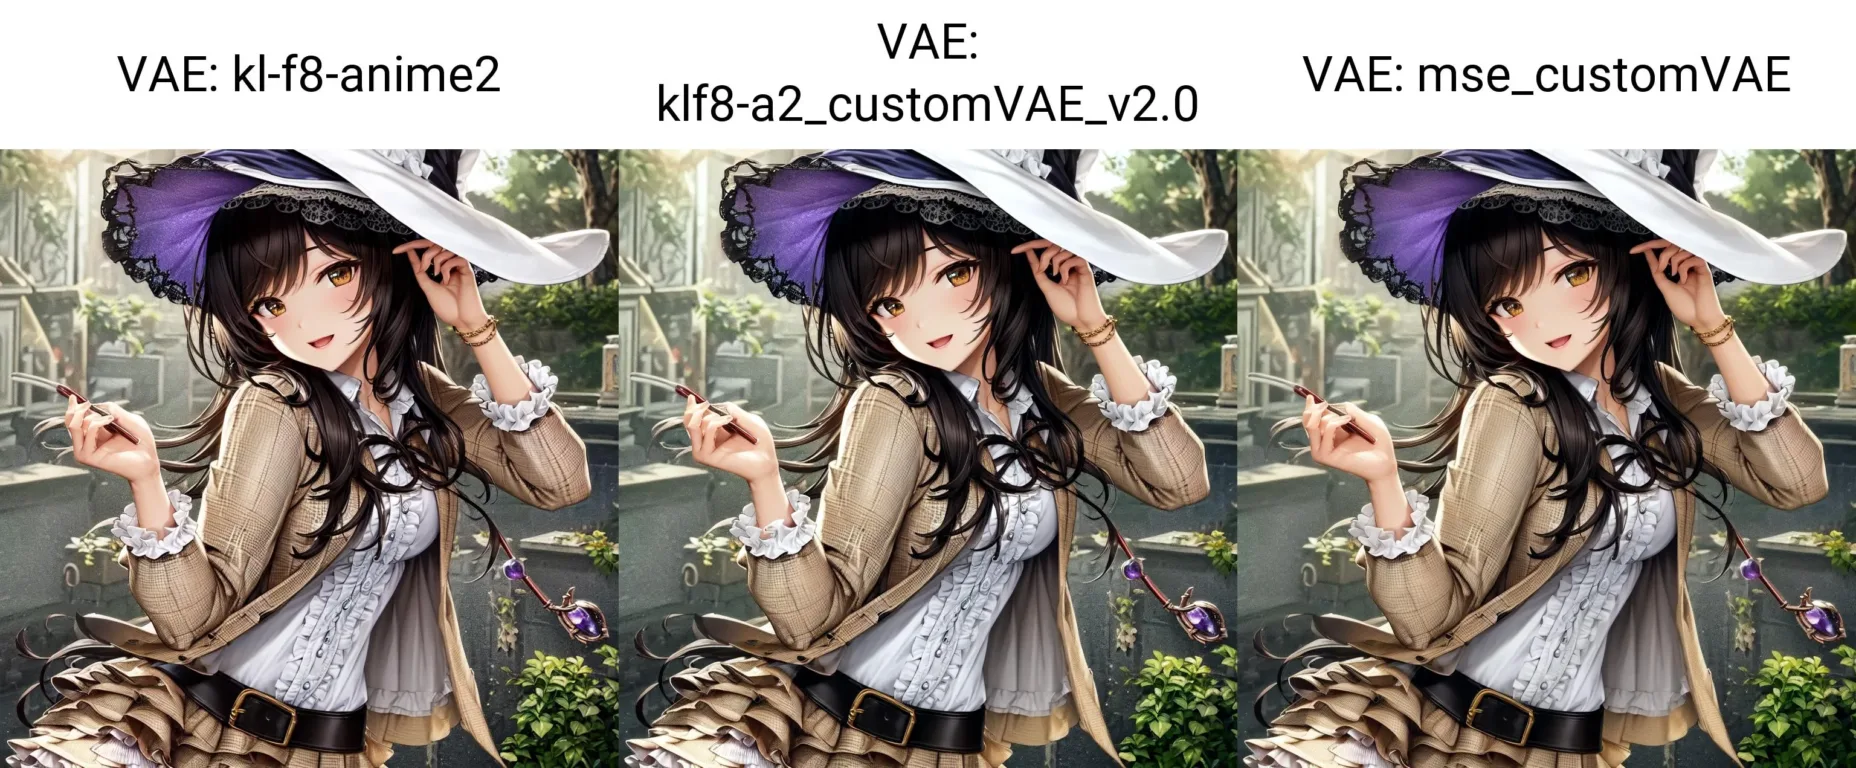 图片[2]_customVAE，新一版VAE美化优化模型_Qpipi